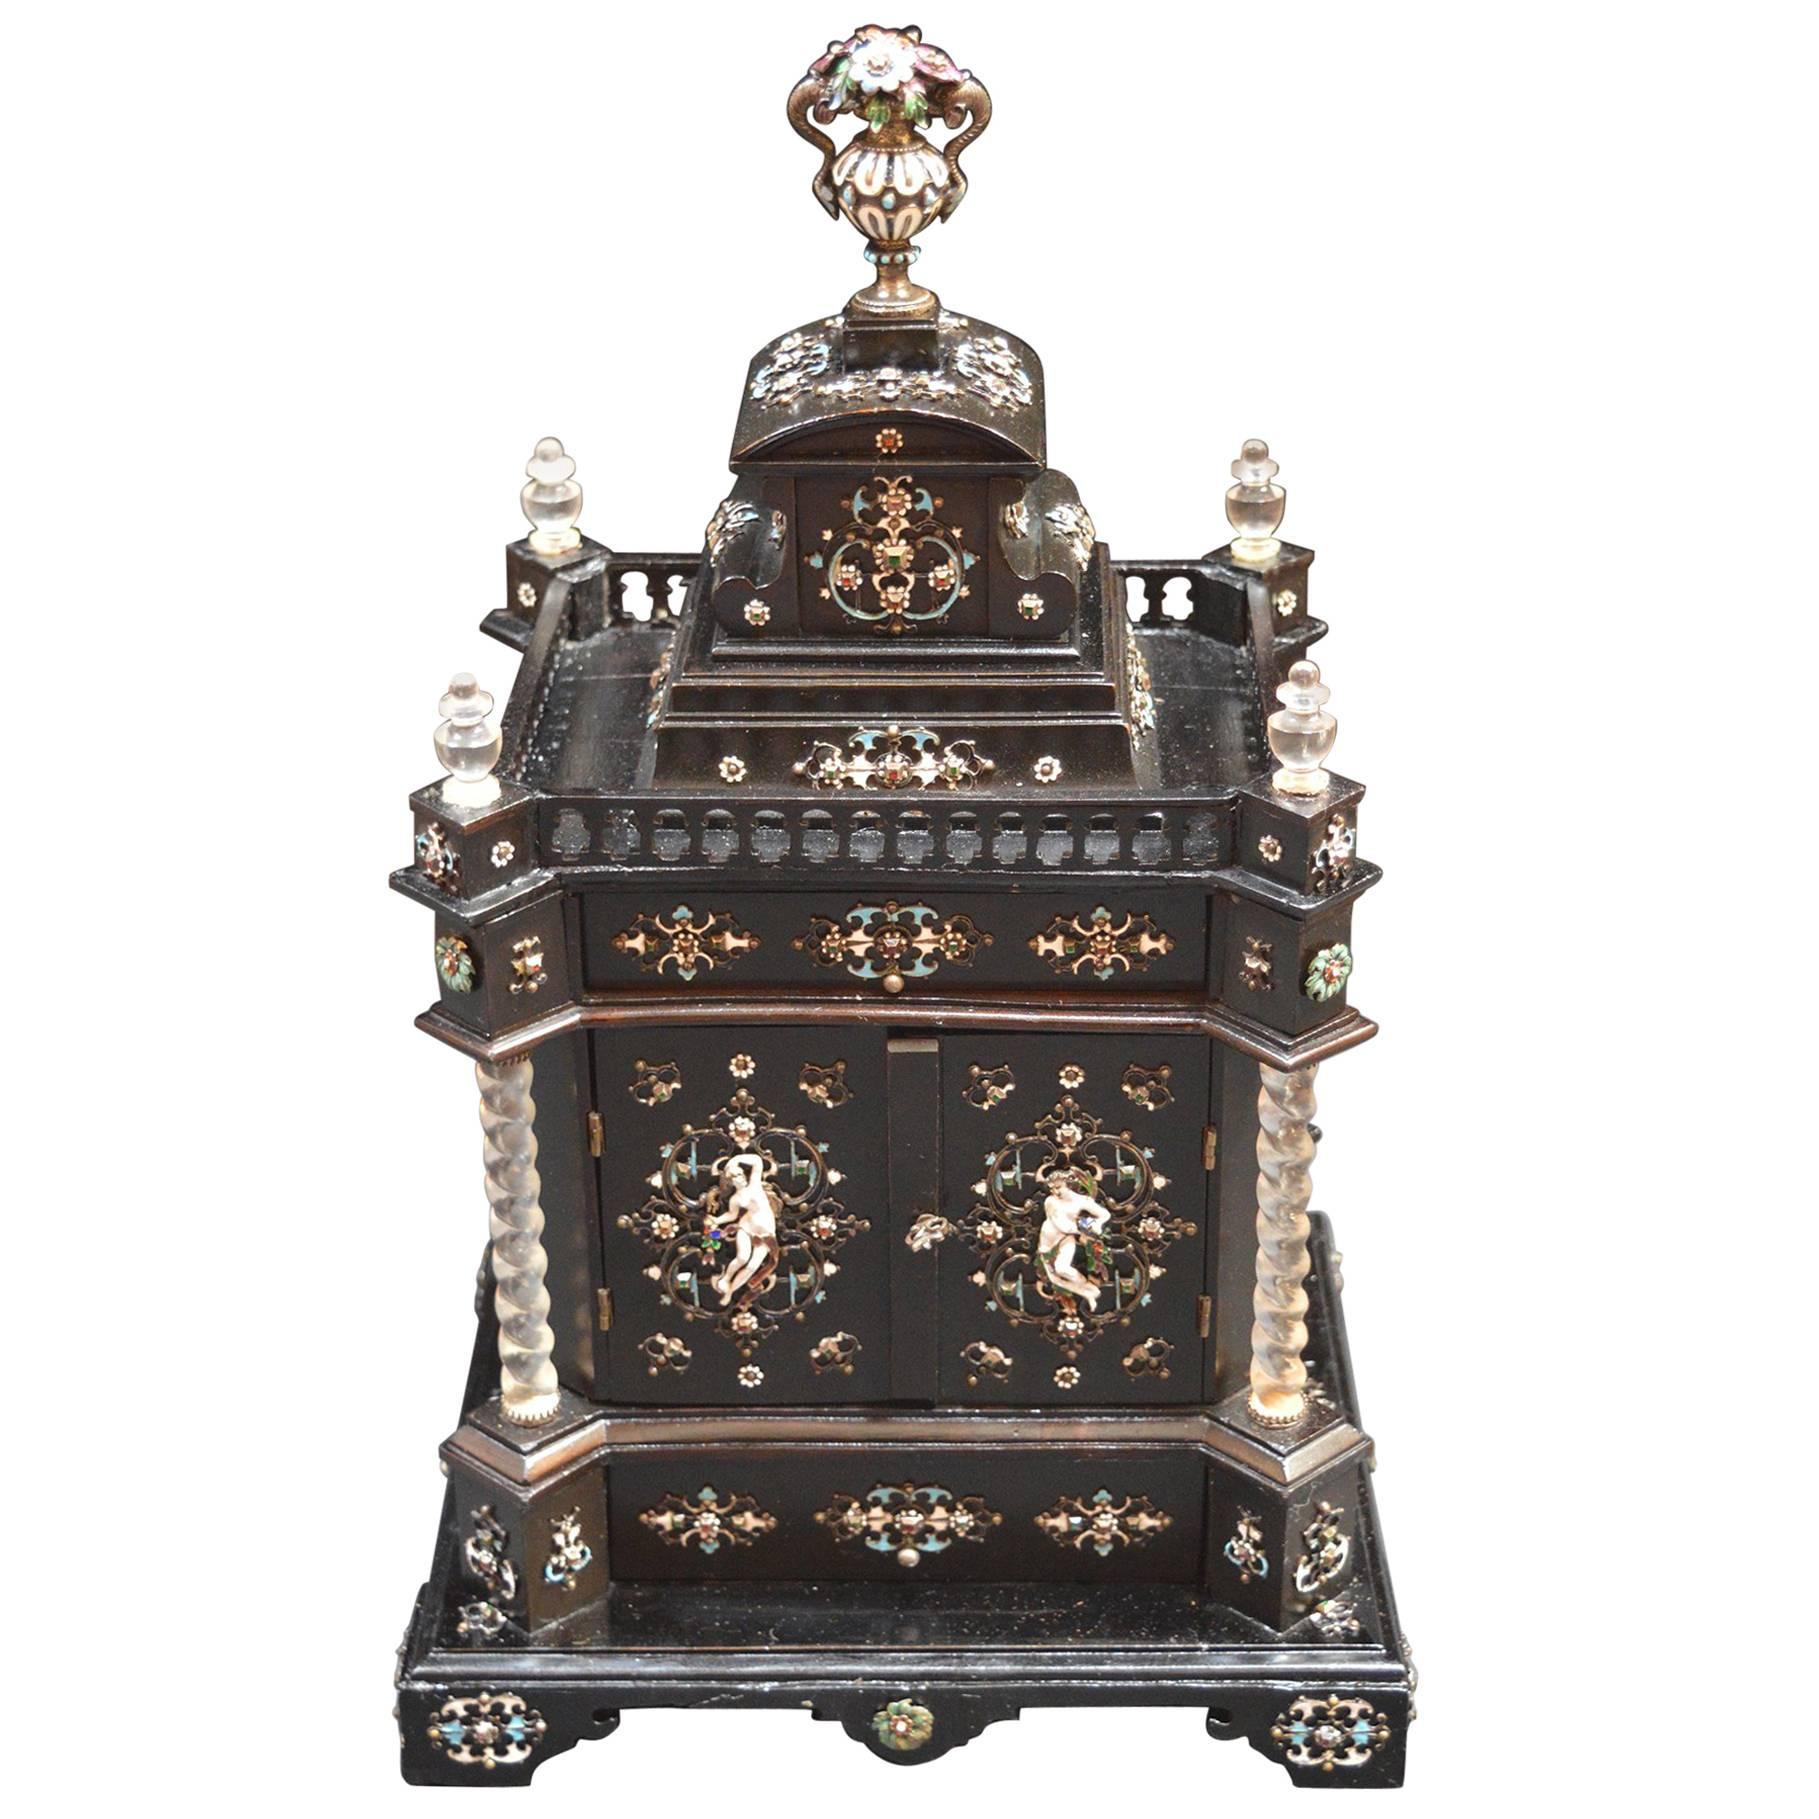 Boîte à bijoux autrichienne en ébène du 19e siècle, montée en cristal de roche et émaillée